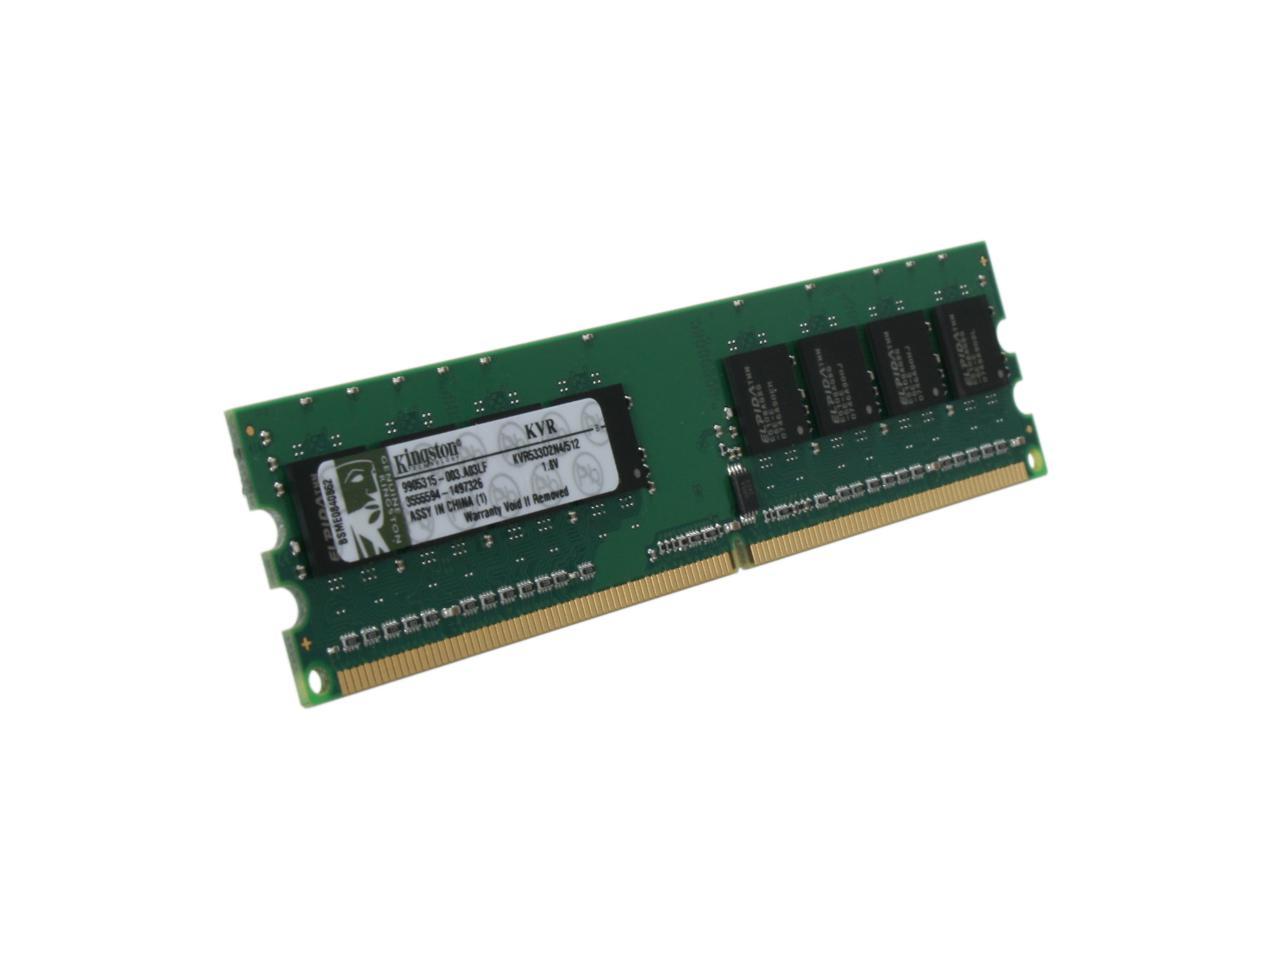 Kingston KVR533D2E4/512 512MB ECC CL4 DIMM 240-Pin DDR II ValueRAM Memory 